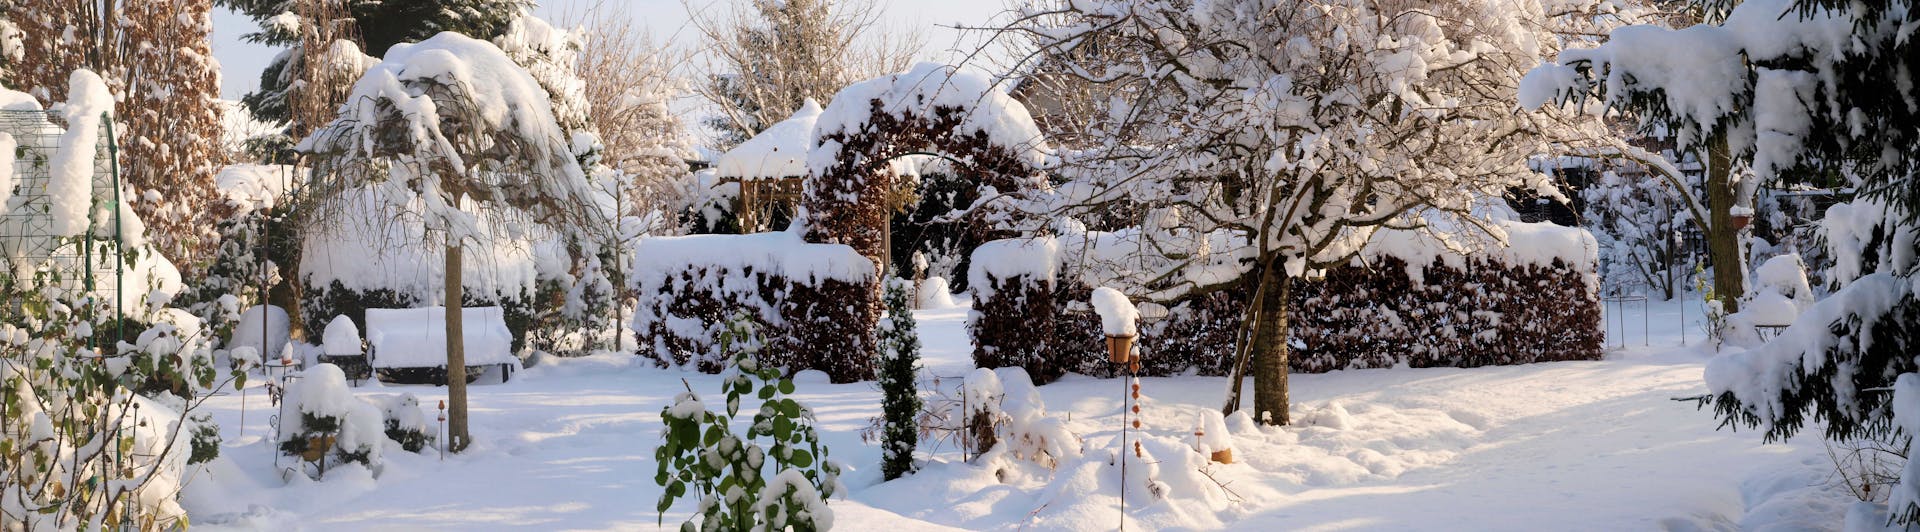 Damit ich dich nicht kalt lasse: Tipps gegen Frost im Winter